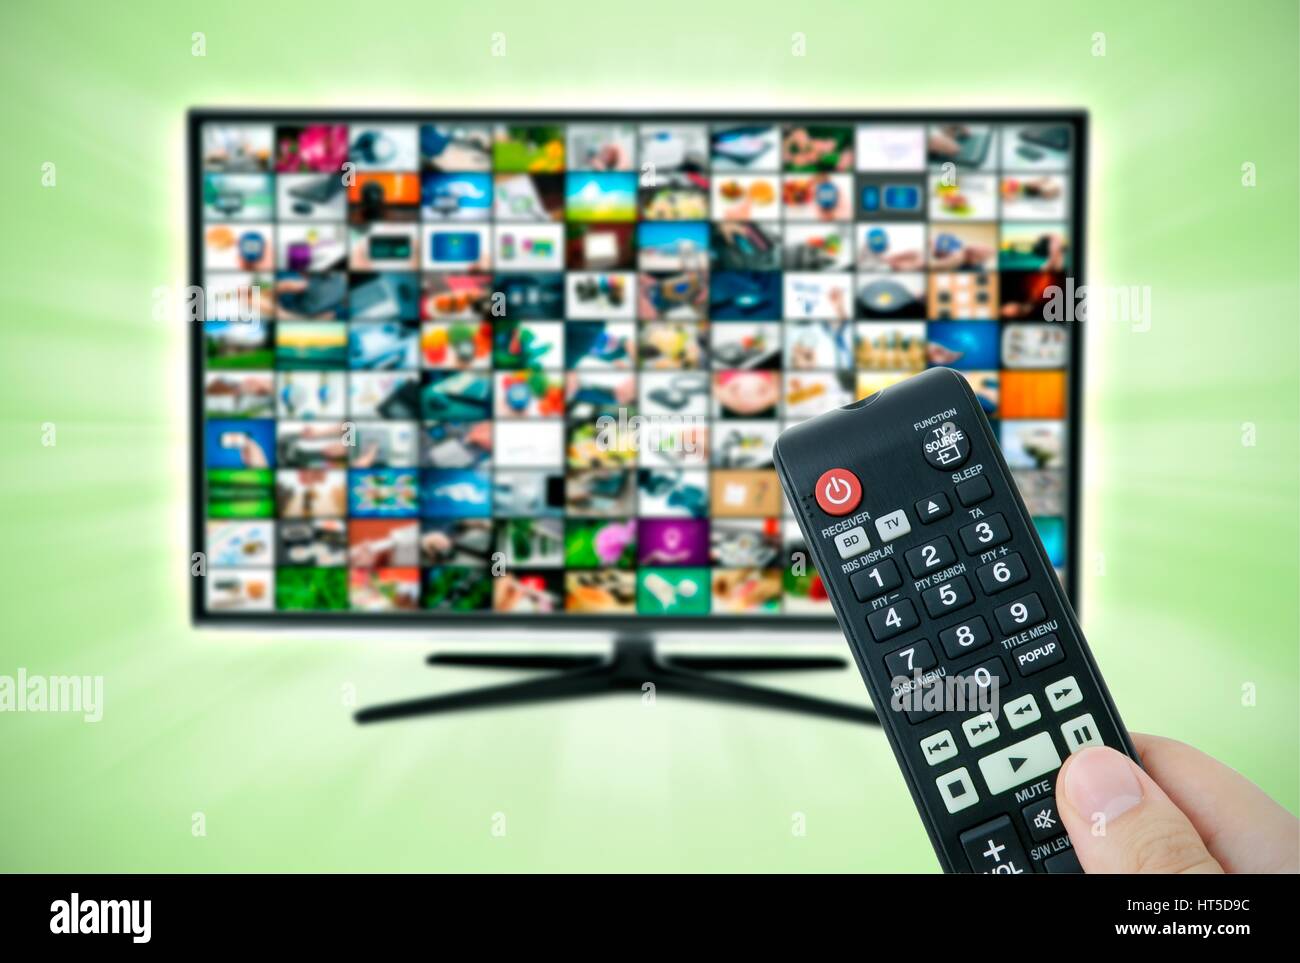 La télévision haute définition à écran large écran avec galerie de vidéos. Télécommande en main Banque D'Images